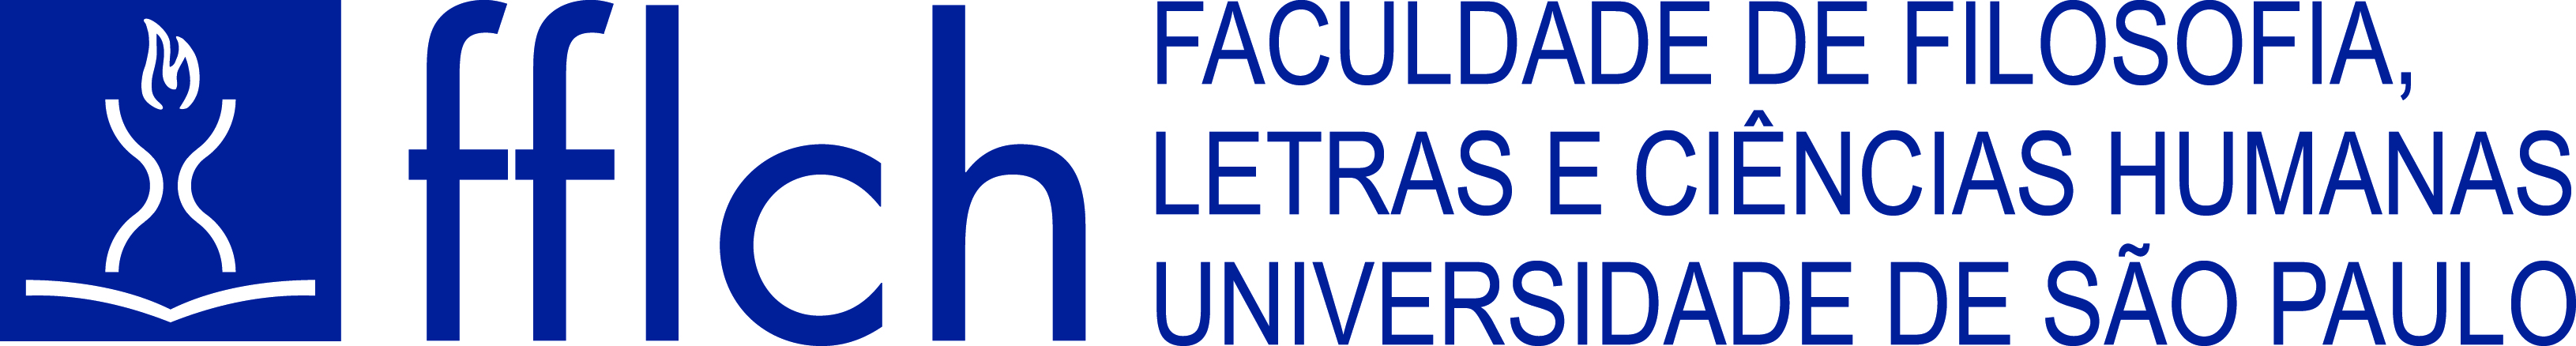 Logo horizontal da Faculdade de Filosofia, Letras e Ciências Humanas